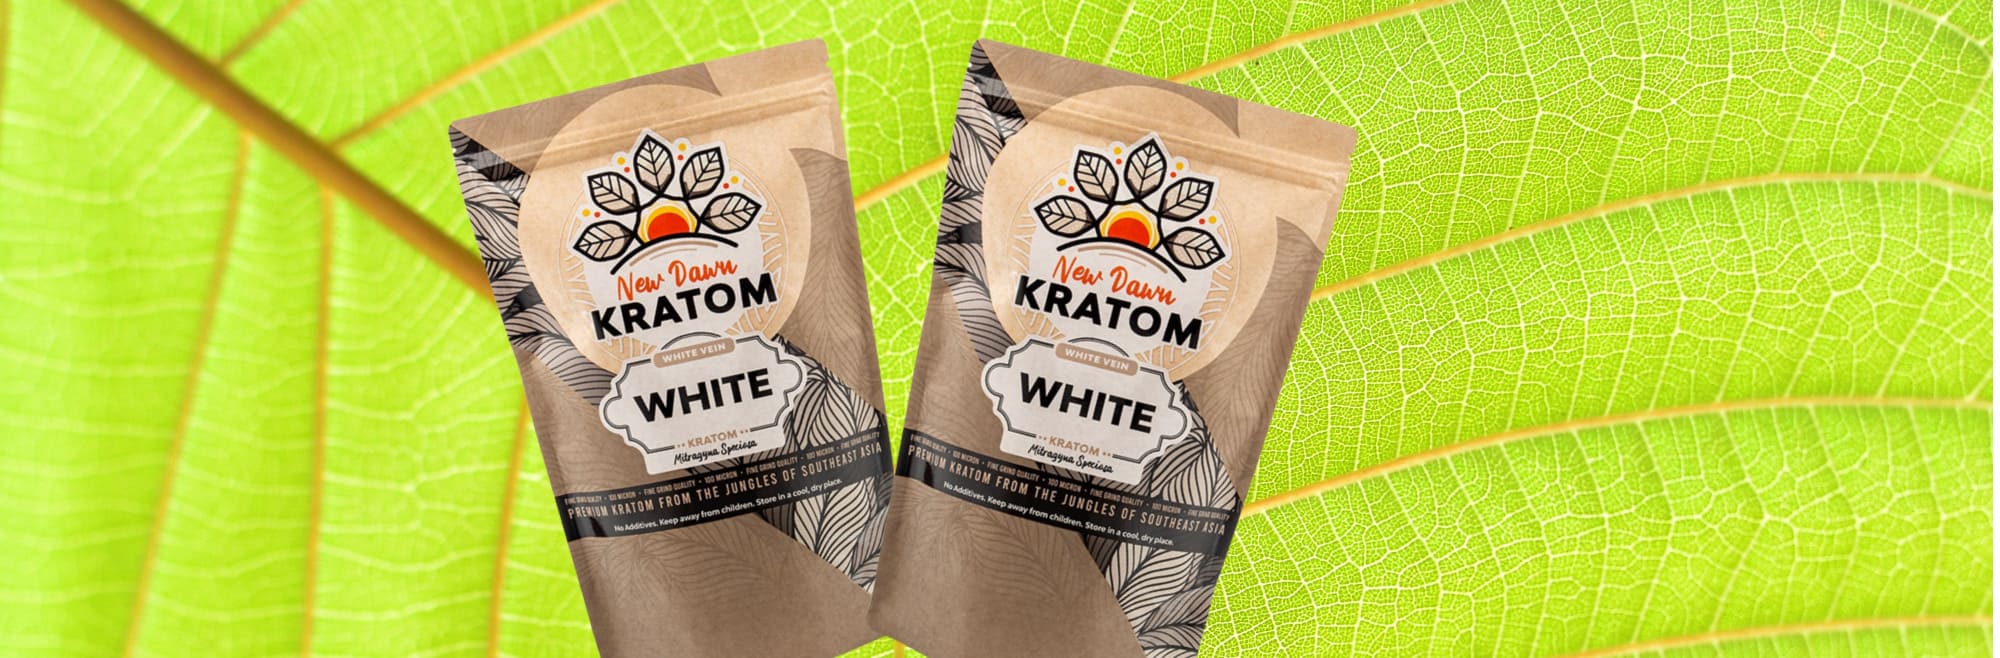 image of white elephant kratom similar strains